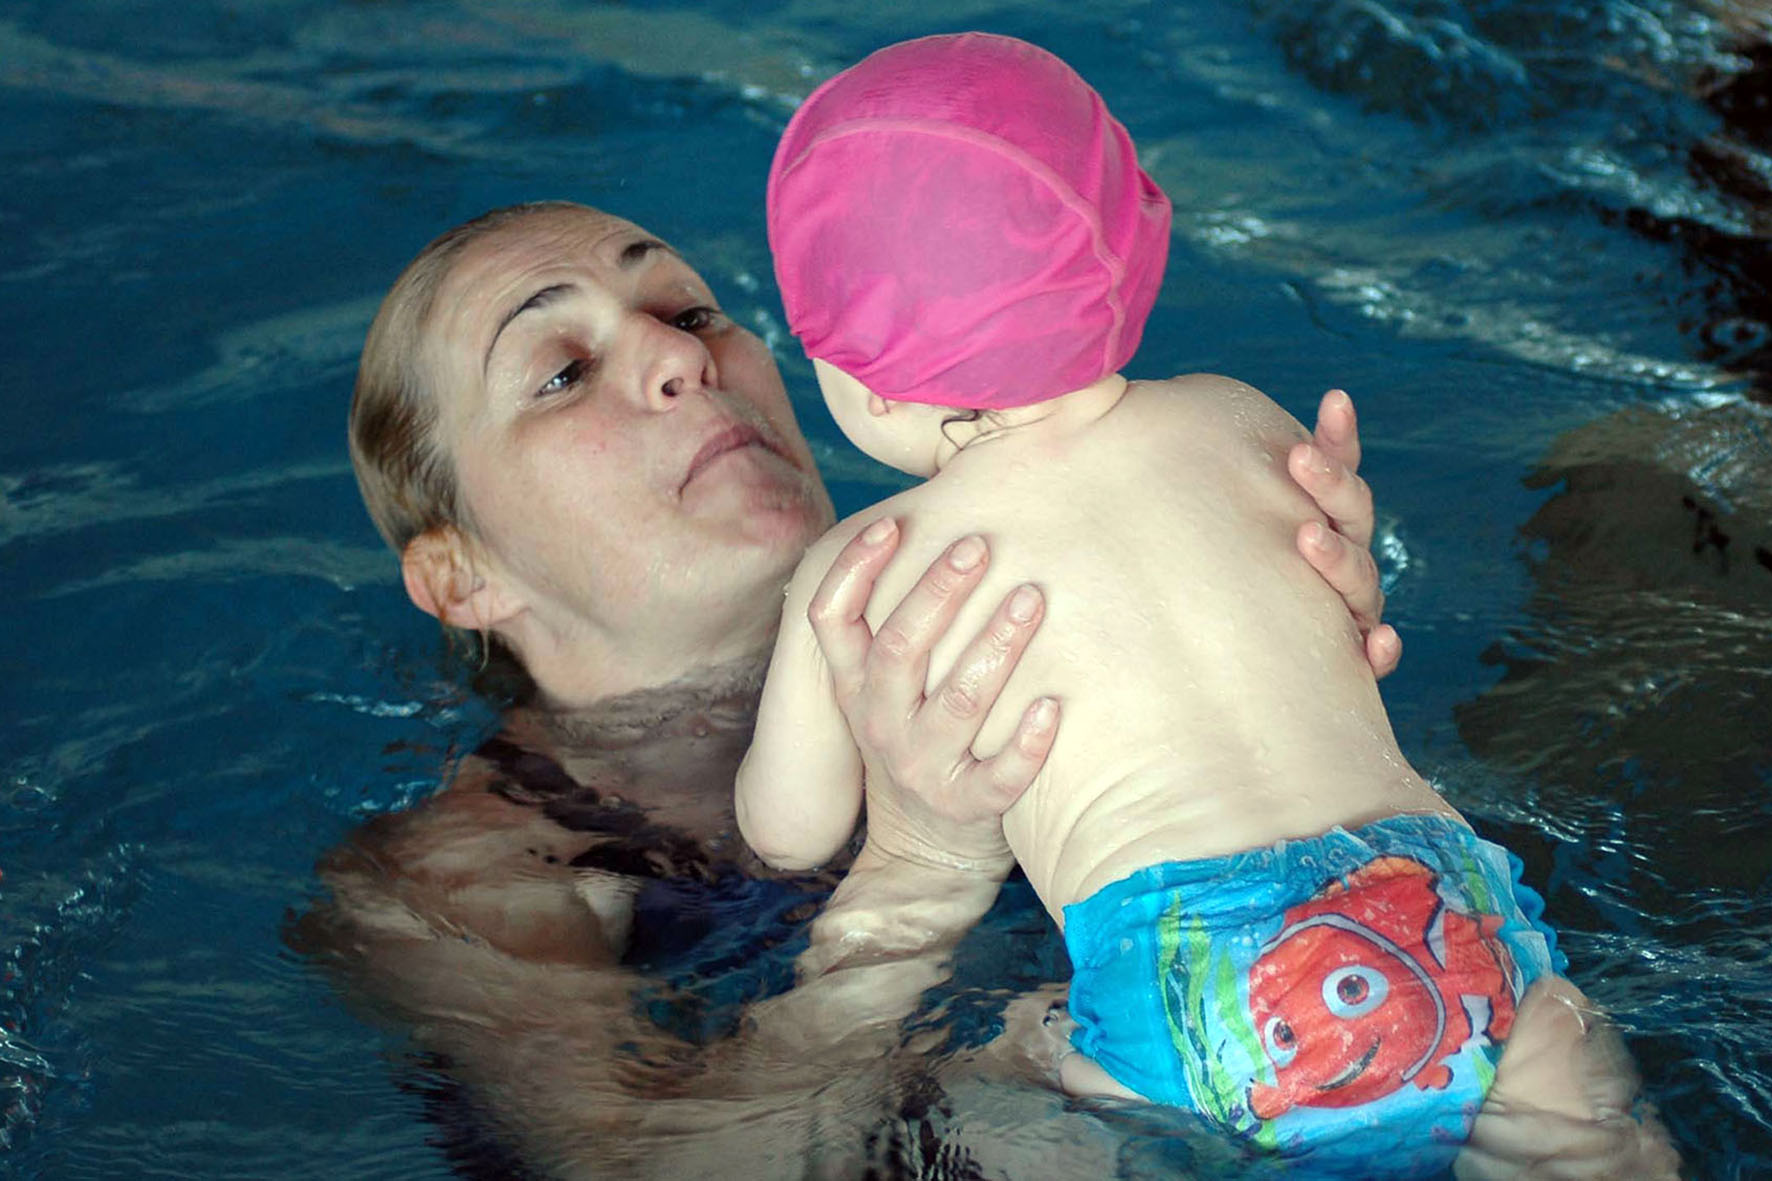 Baby Acquatic’s Day, una doppia domenica dedicata al nuoto neonatale